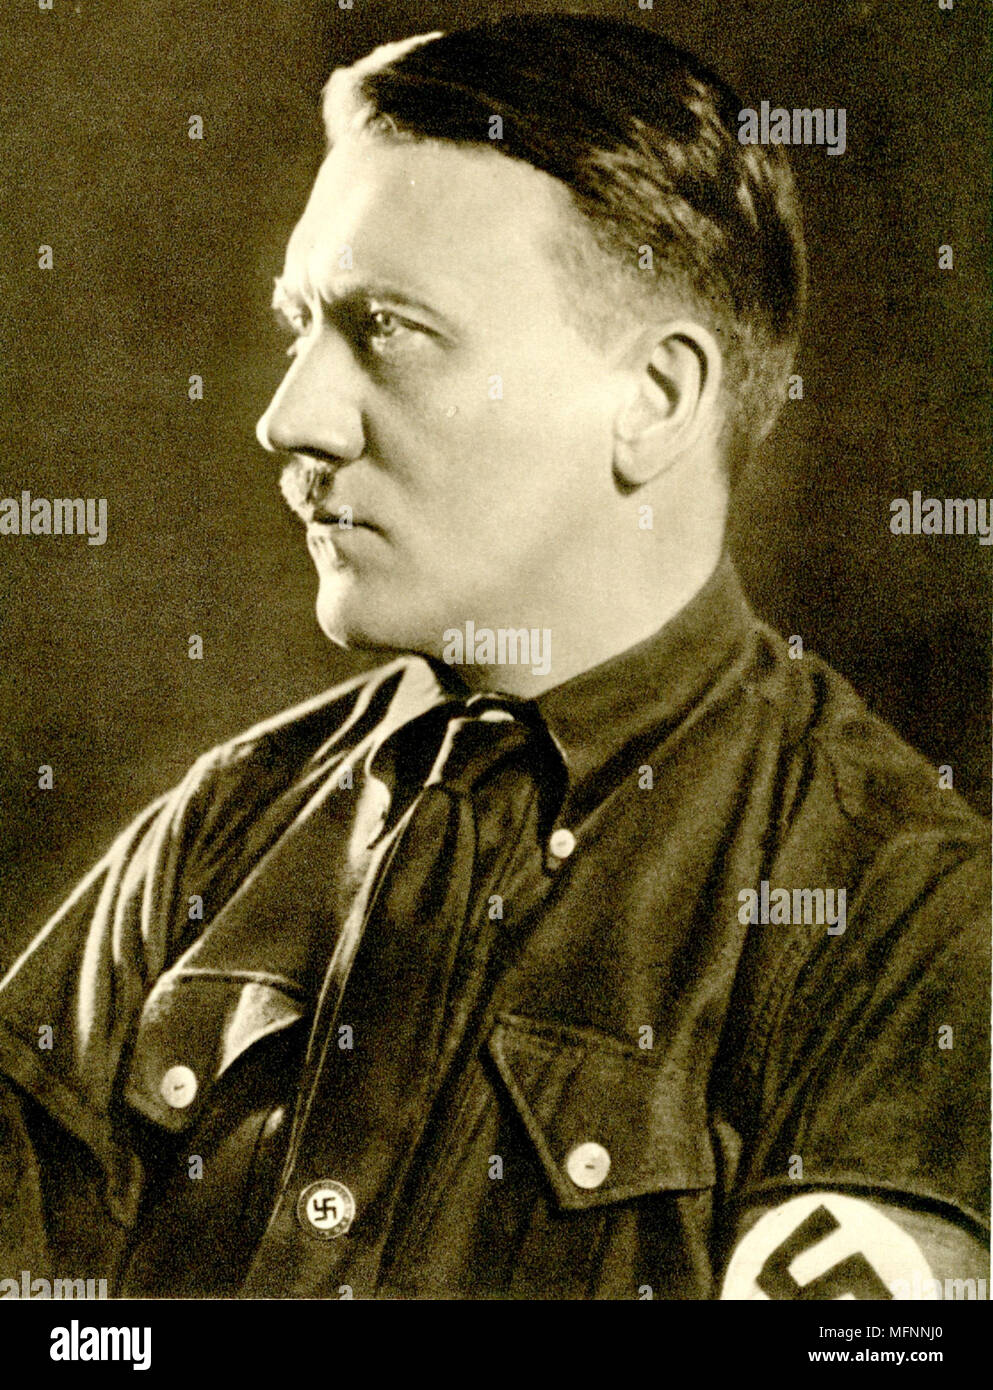 Adolf Hitler (1889-1945) war ein österreichischer geborene deutsche Politiker, der die Nationalsozialistische Deutsche Arbeiterpartei geführt. Er war Bundeskanzler der Bundesrepublik Deutschland (1933-1945) und Führer Deutschlands (1934-1945). Stockfoto